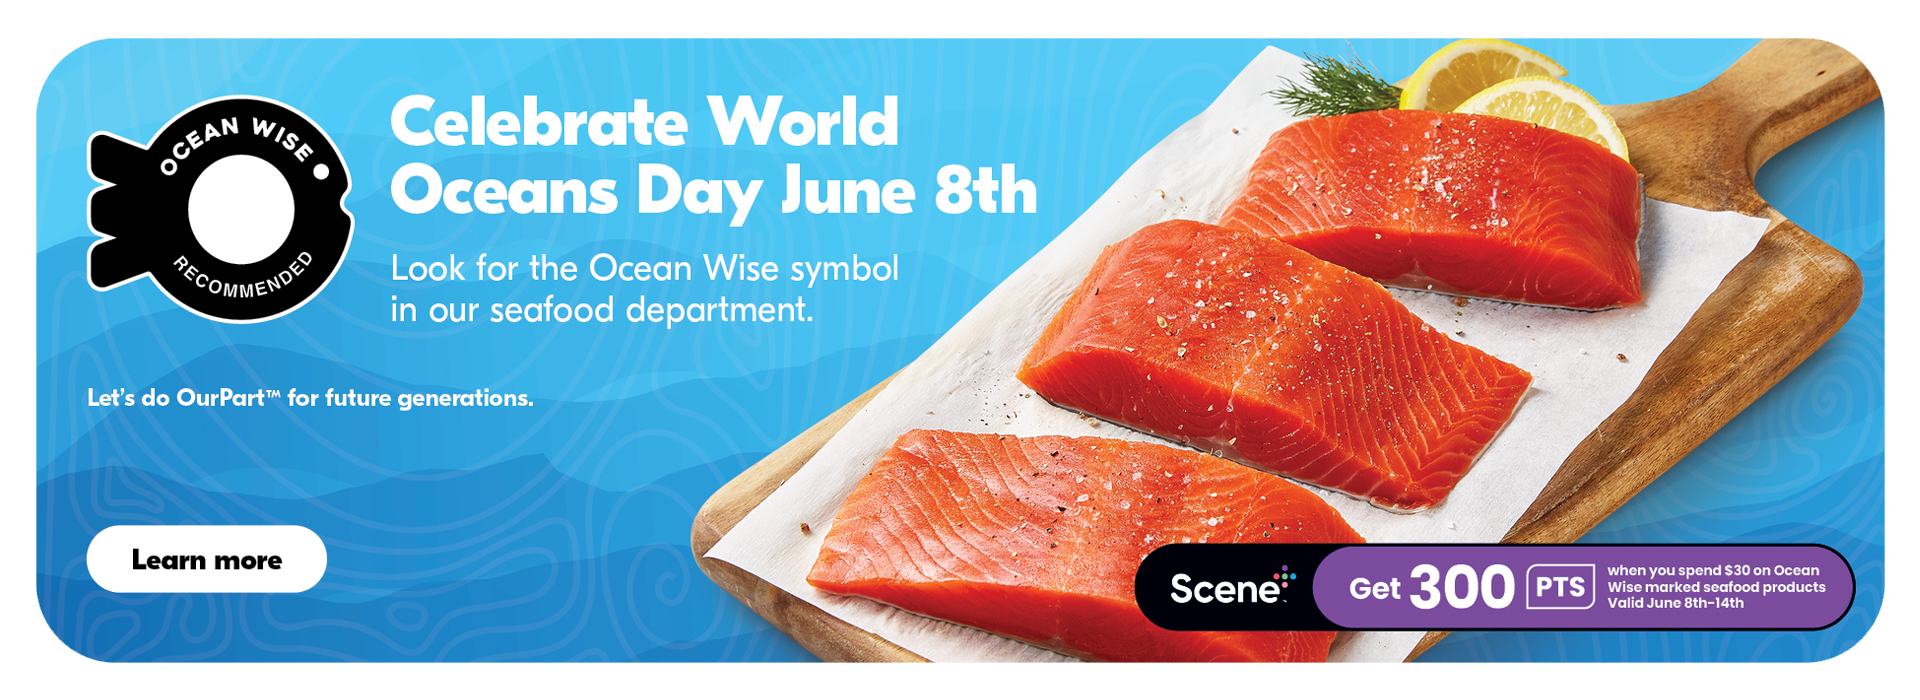 Celebrate World Ocean's Day on June 8